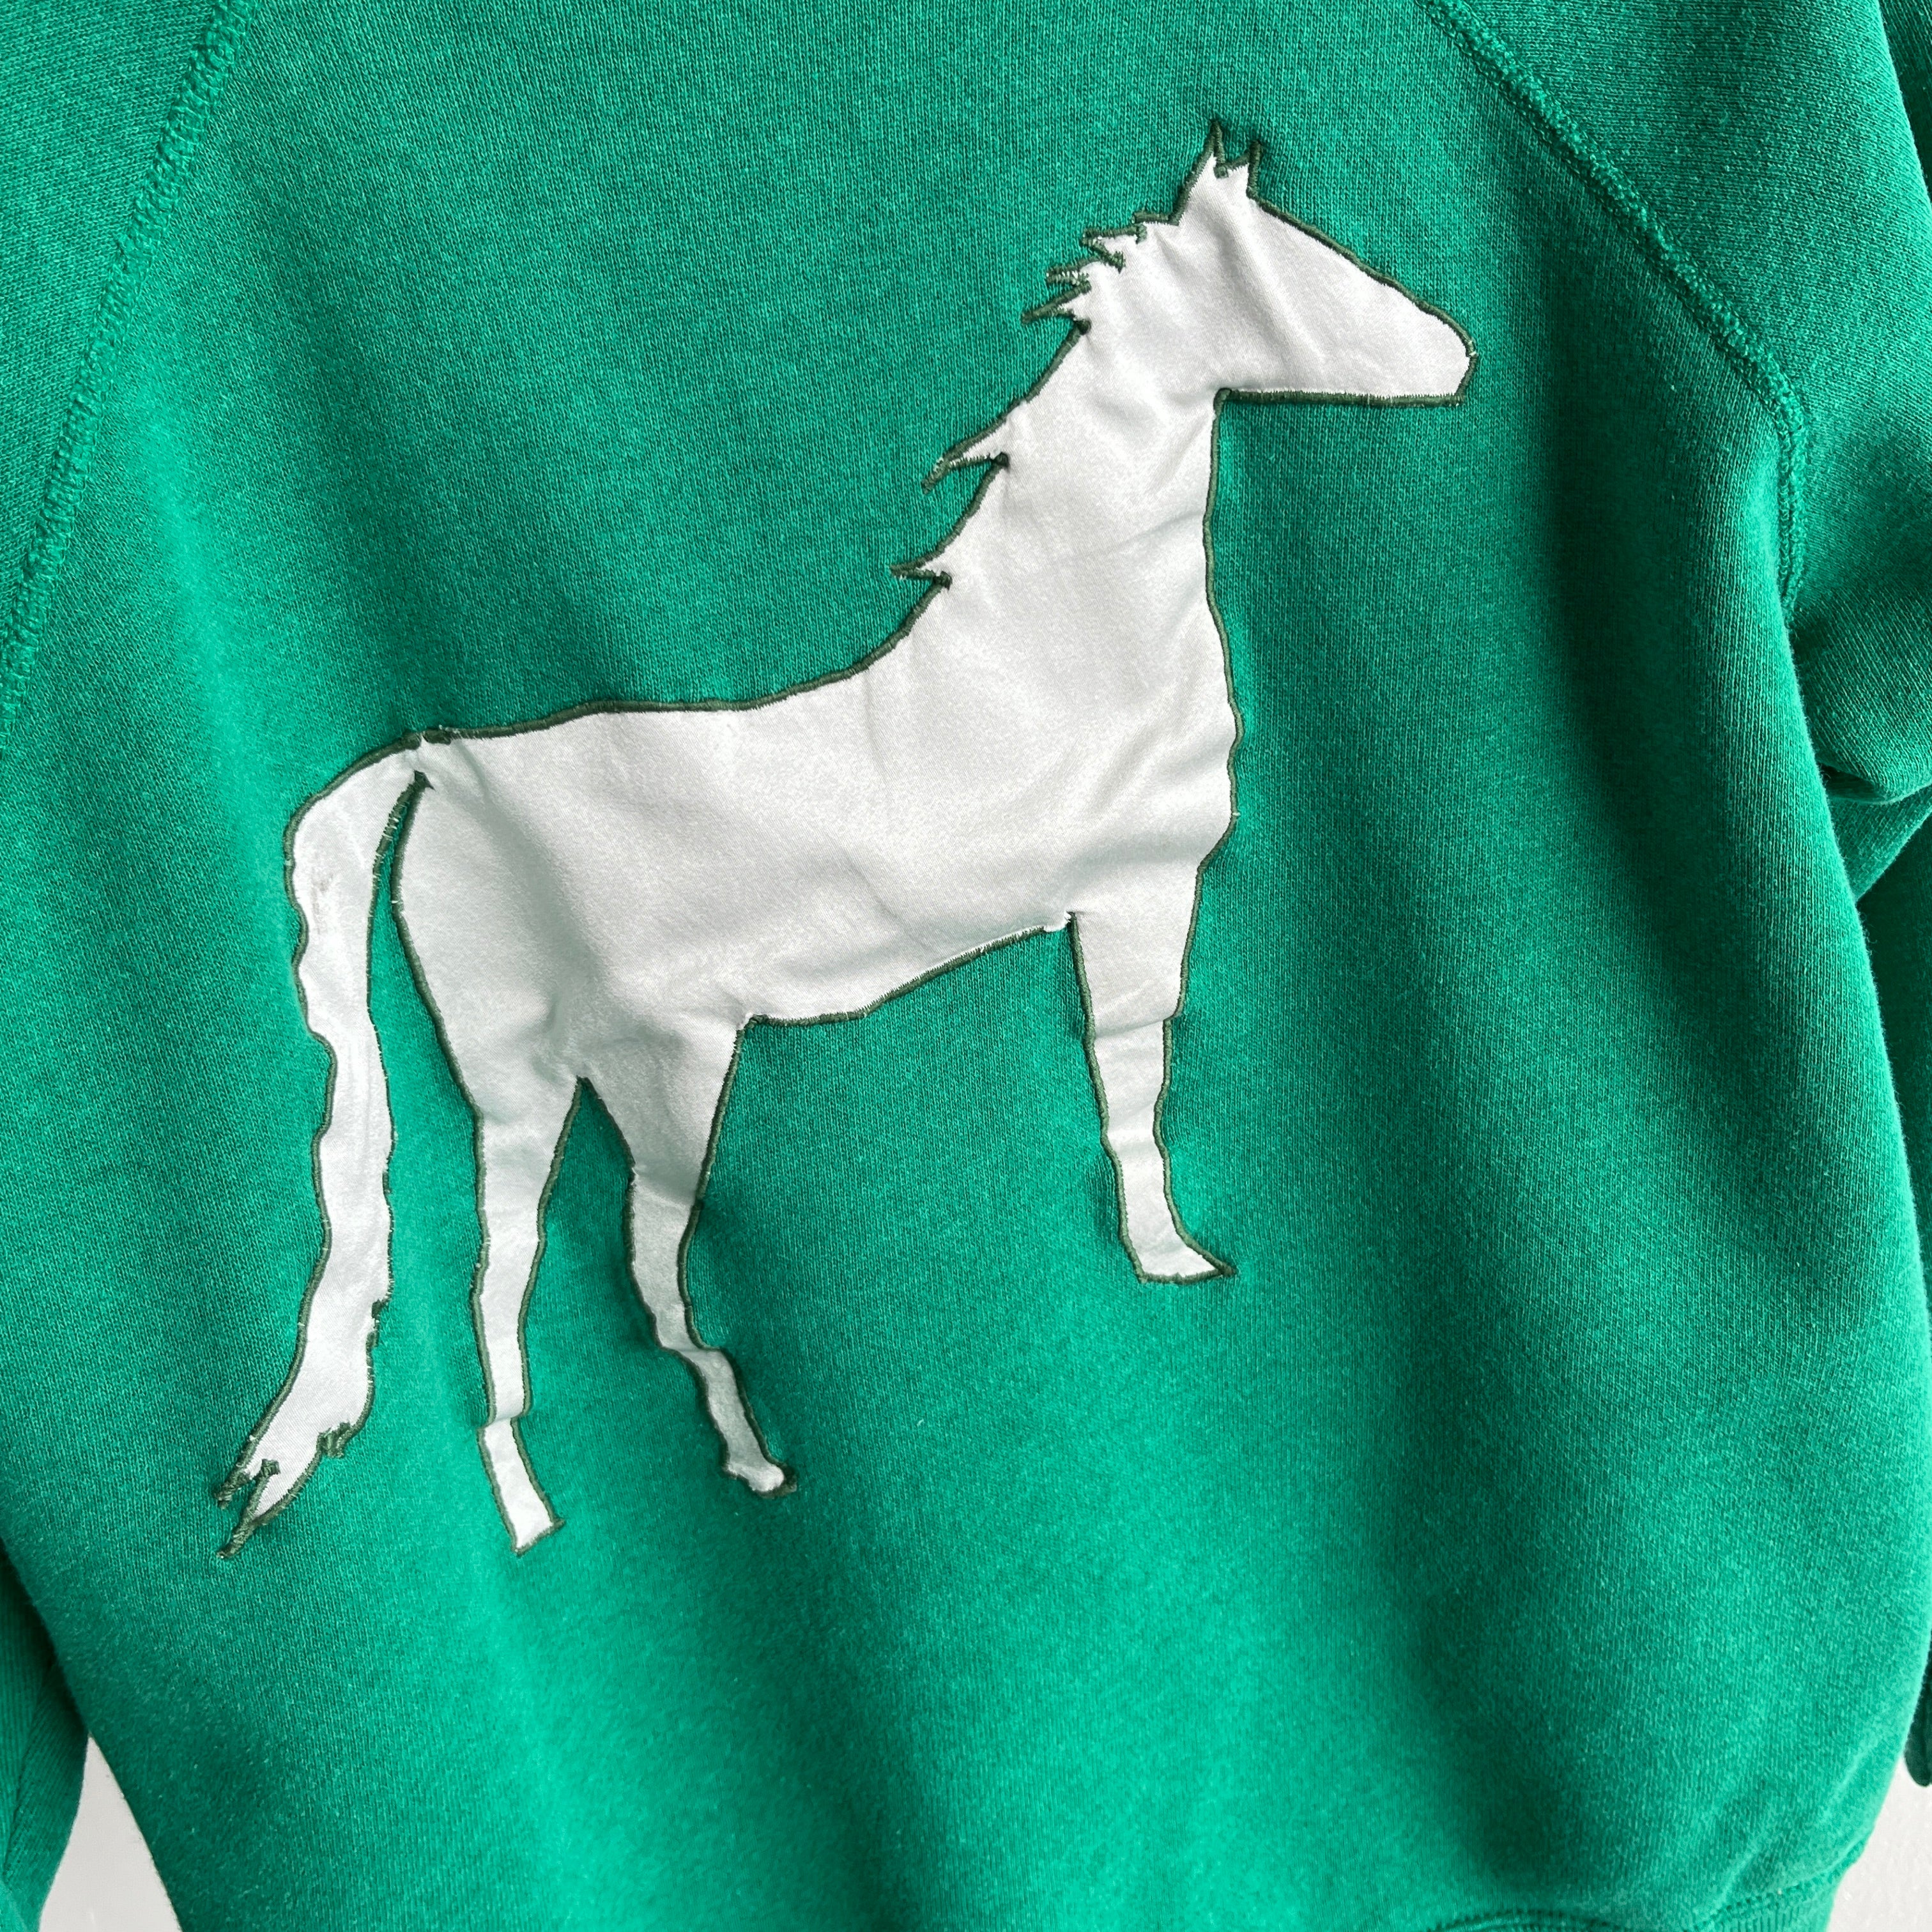 1980s DIY Running Horse Sweatshirt - Awwww